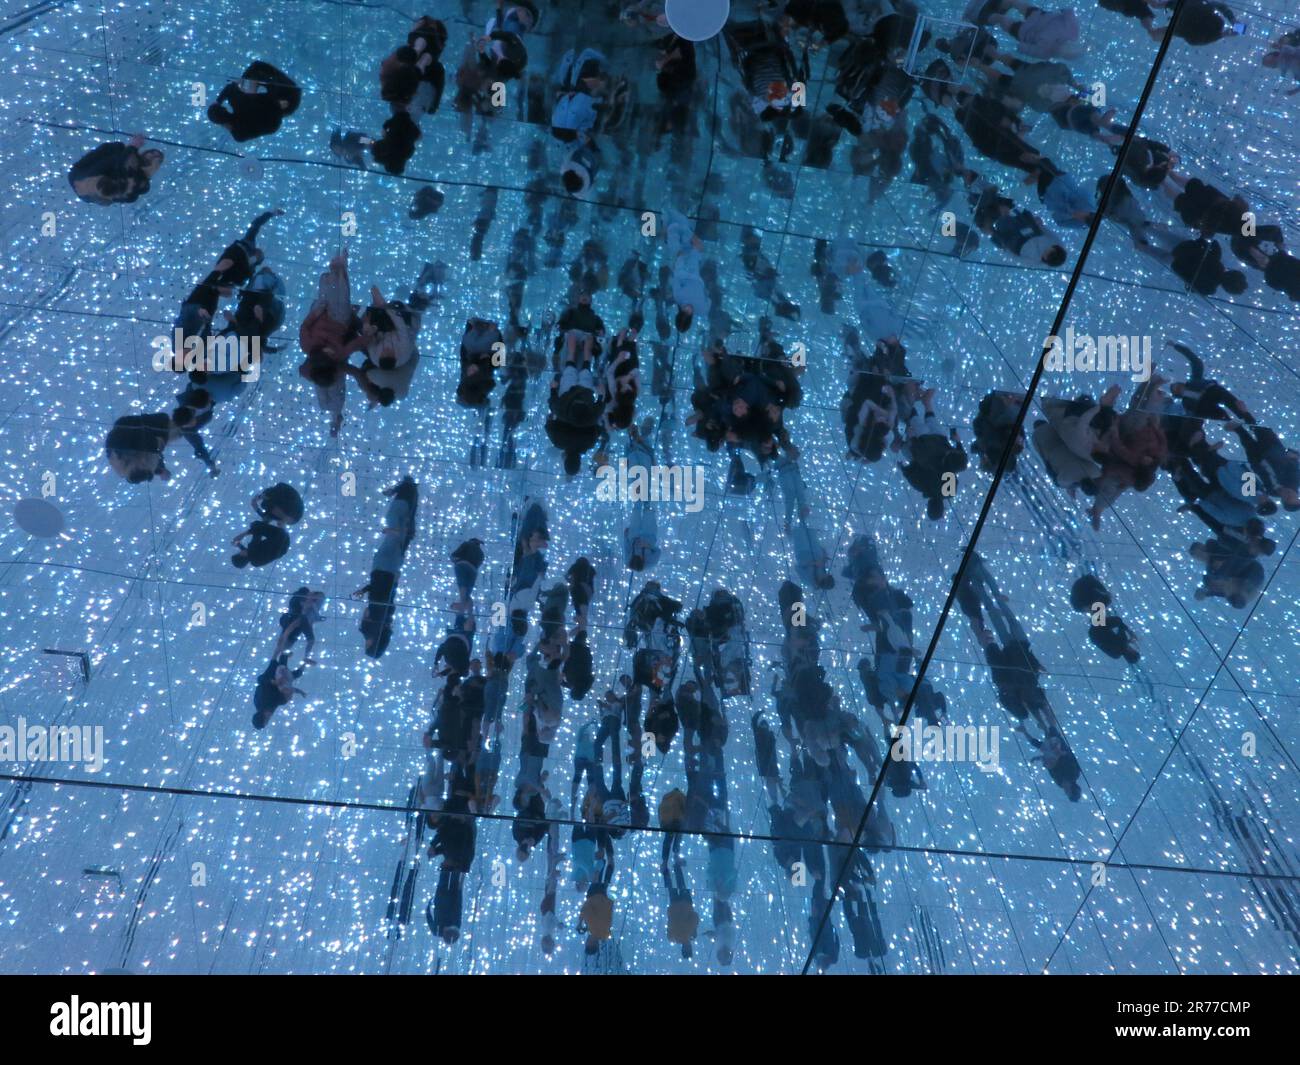 TeamLab planètes, Tokyo : une salle pleine de cordes de lumières LED, mur miroir, plancher et plafond pour vous immerger dans cet univers de cristal infini Banque D'Images